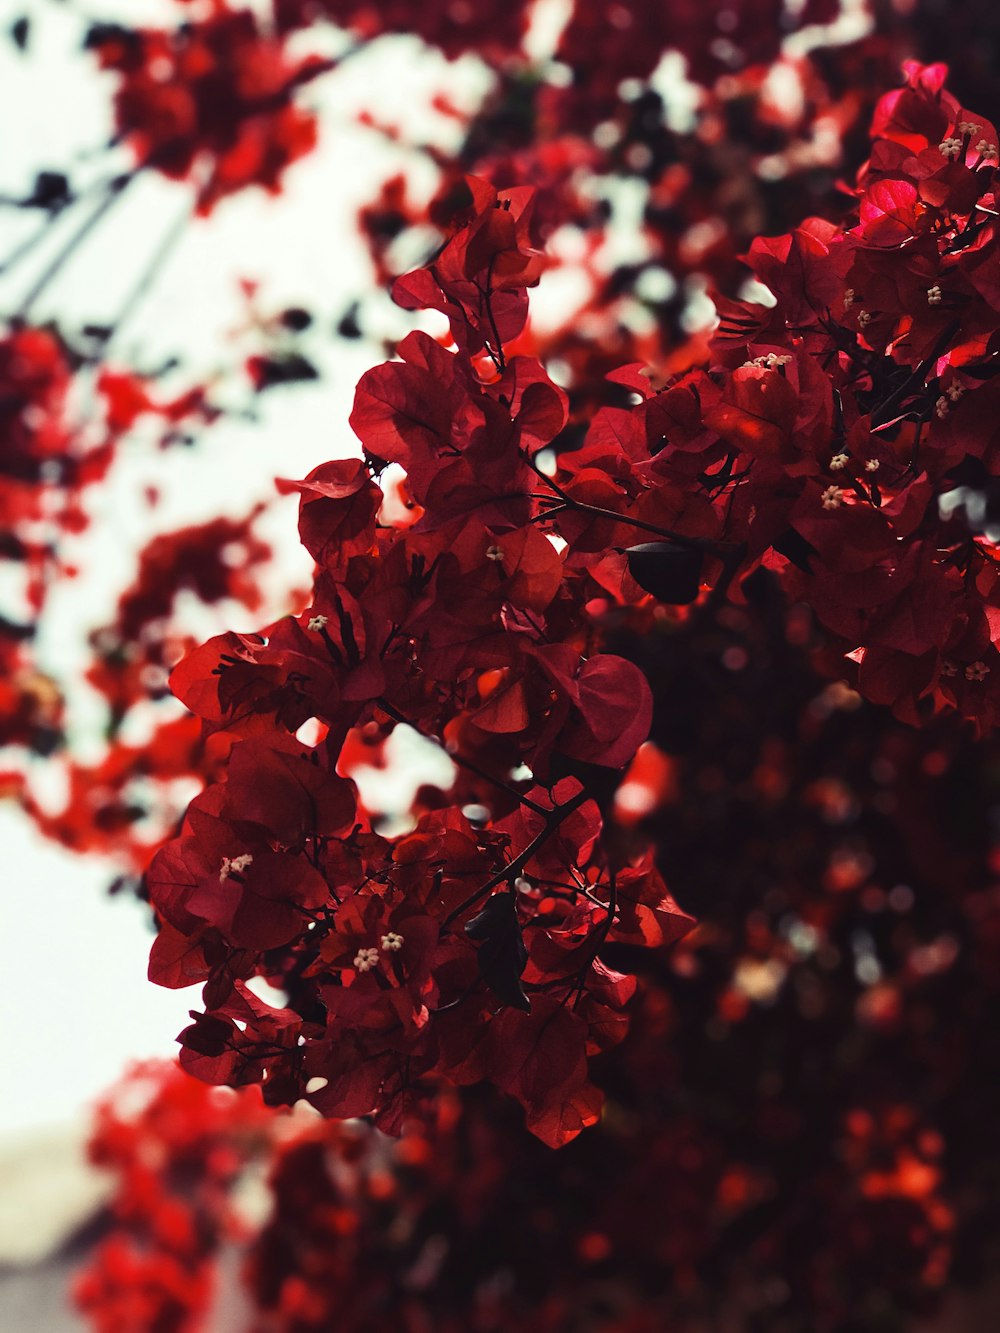 Hãy khám phá hình ảnh với những chiếc lá đỏ rực rỡ, mang lại sức sống và động lực cho ngày mới của bạn.